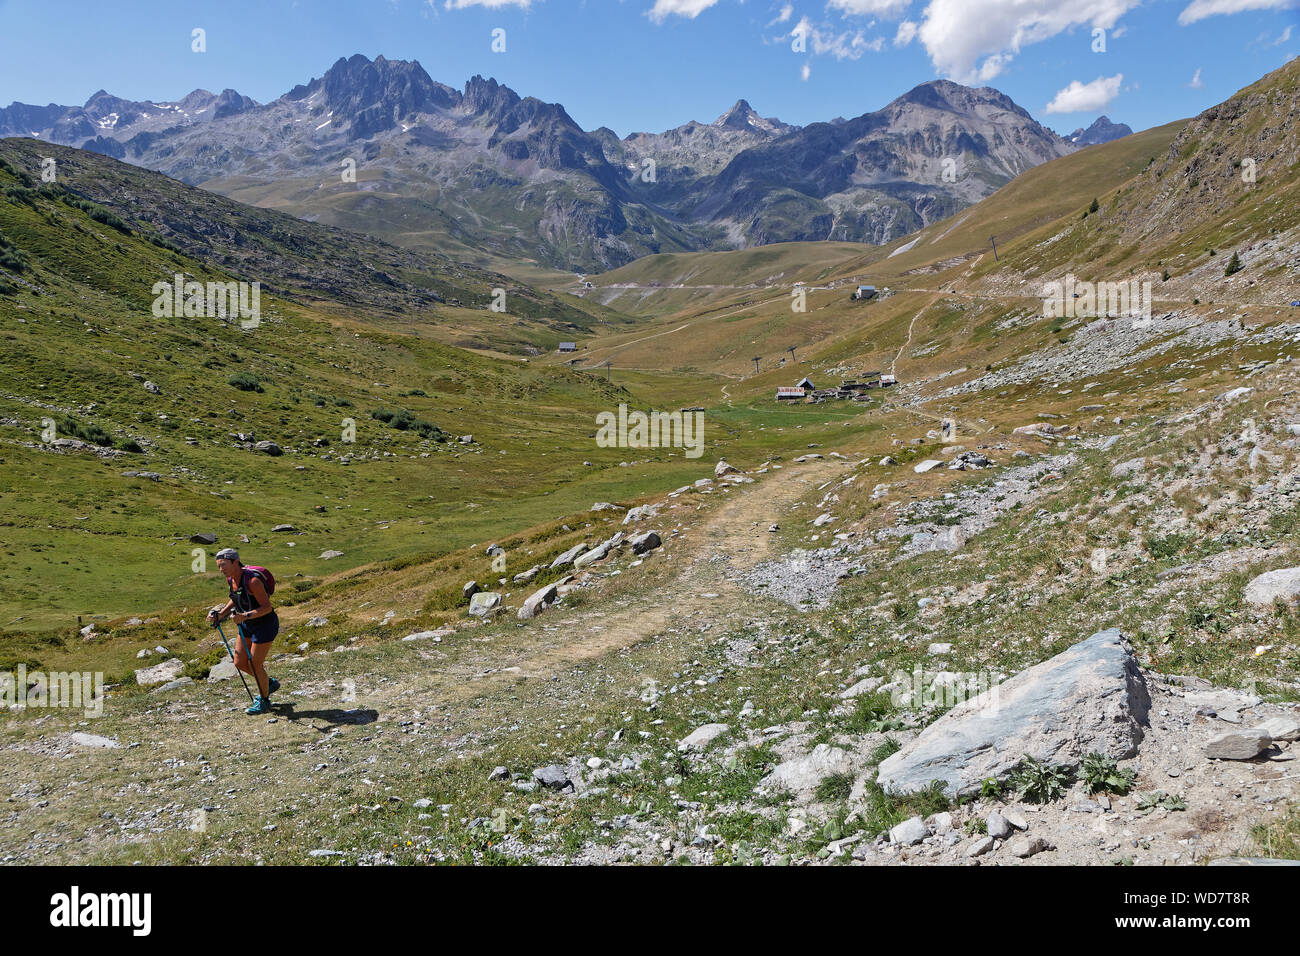 - SAINT SORLIN, Frankreich, 9. August 2019: Wanderer auf dem Weg zum berühmten pass "Col de la Croix de Fer in die Französischen Alpen. Stockfoto